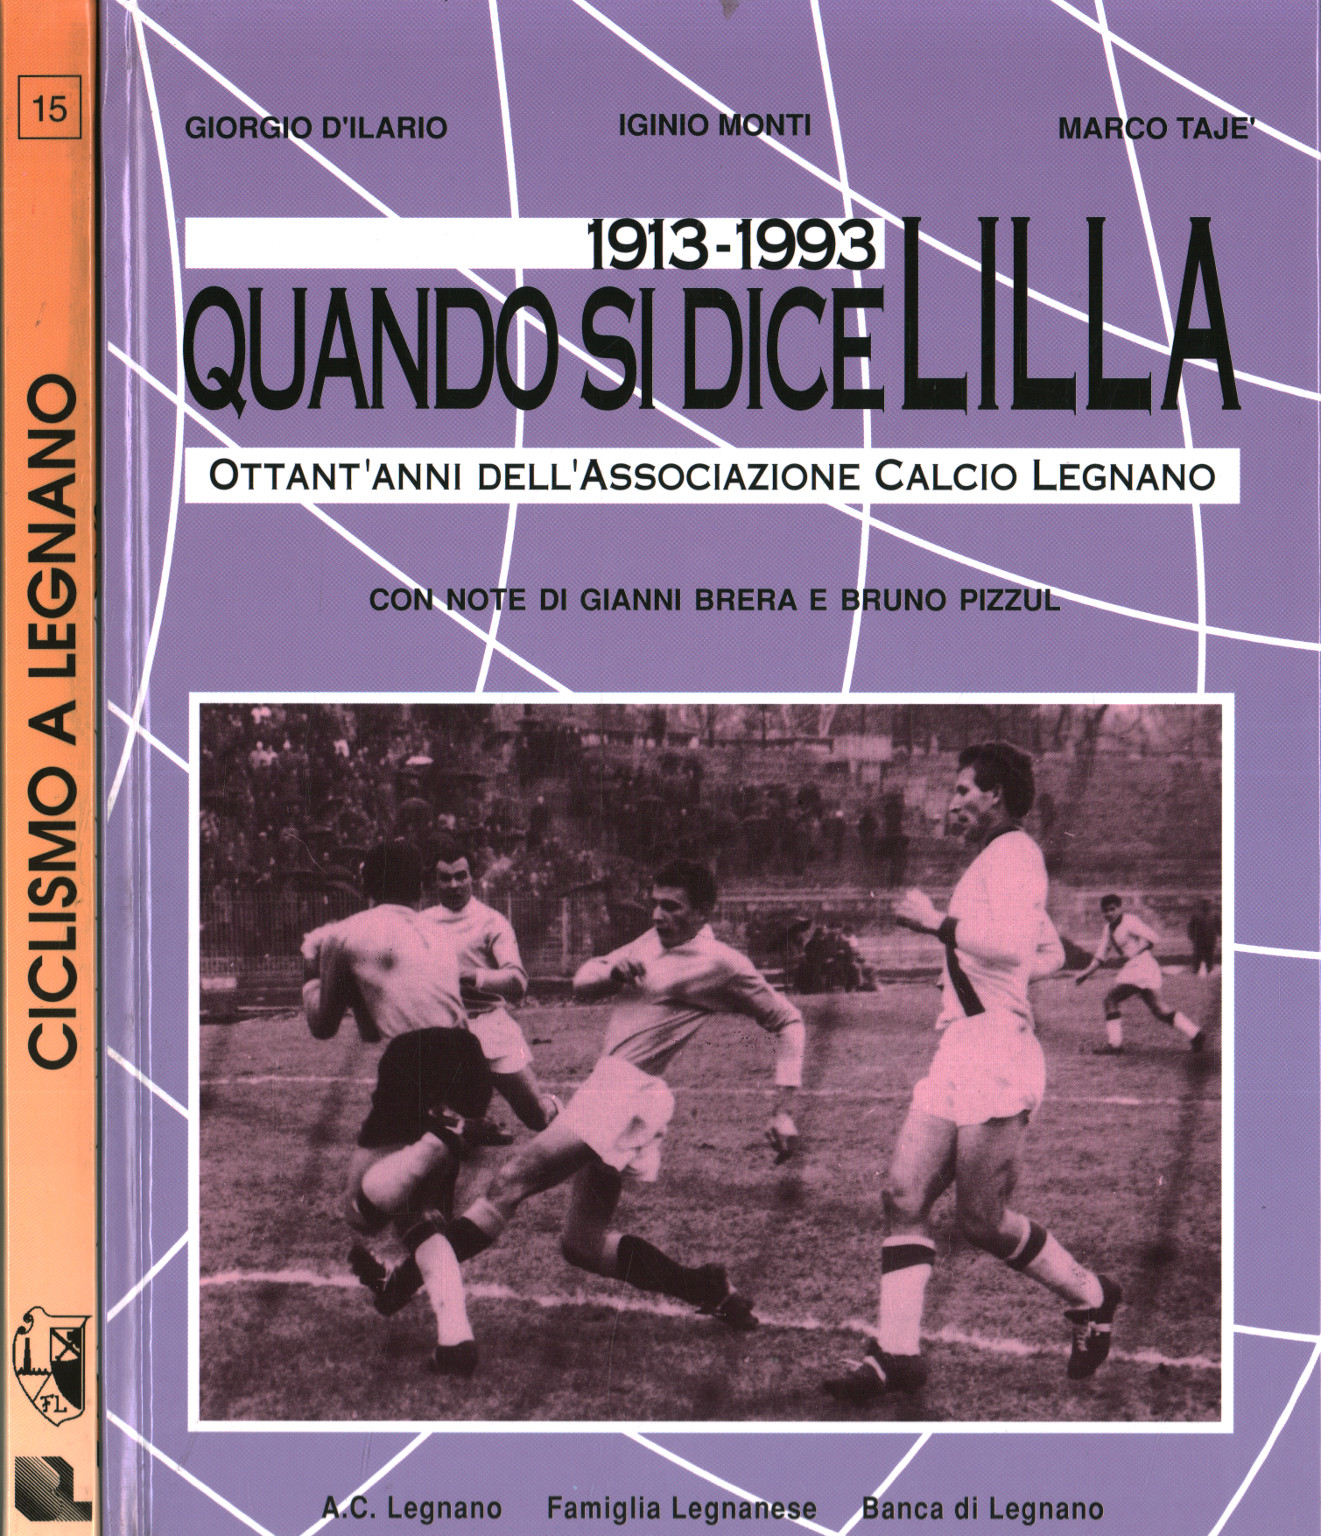 Football and cycling in the Legnano area. 1913-1993 (2 Volu, Giorgio D Ilario Iginio Monti Marco Tajè